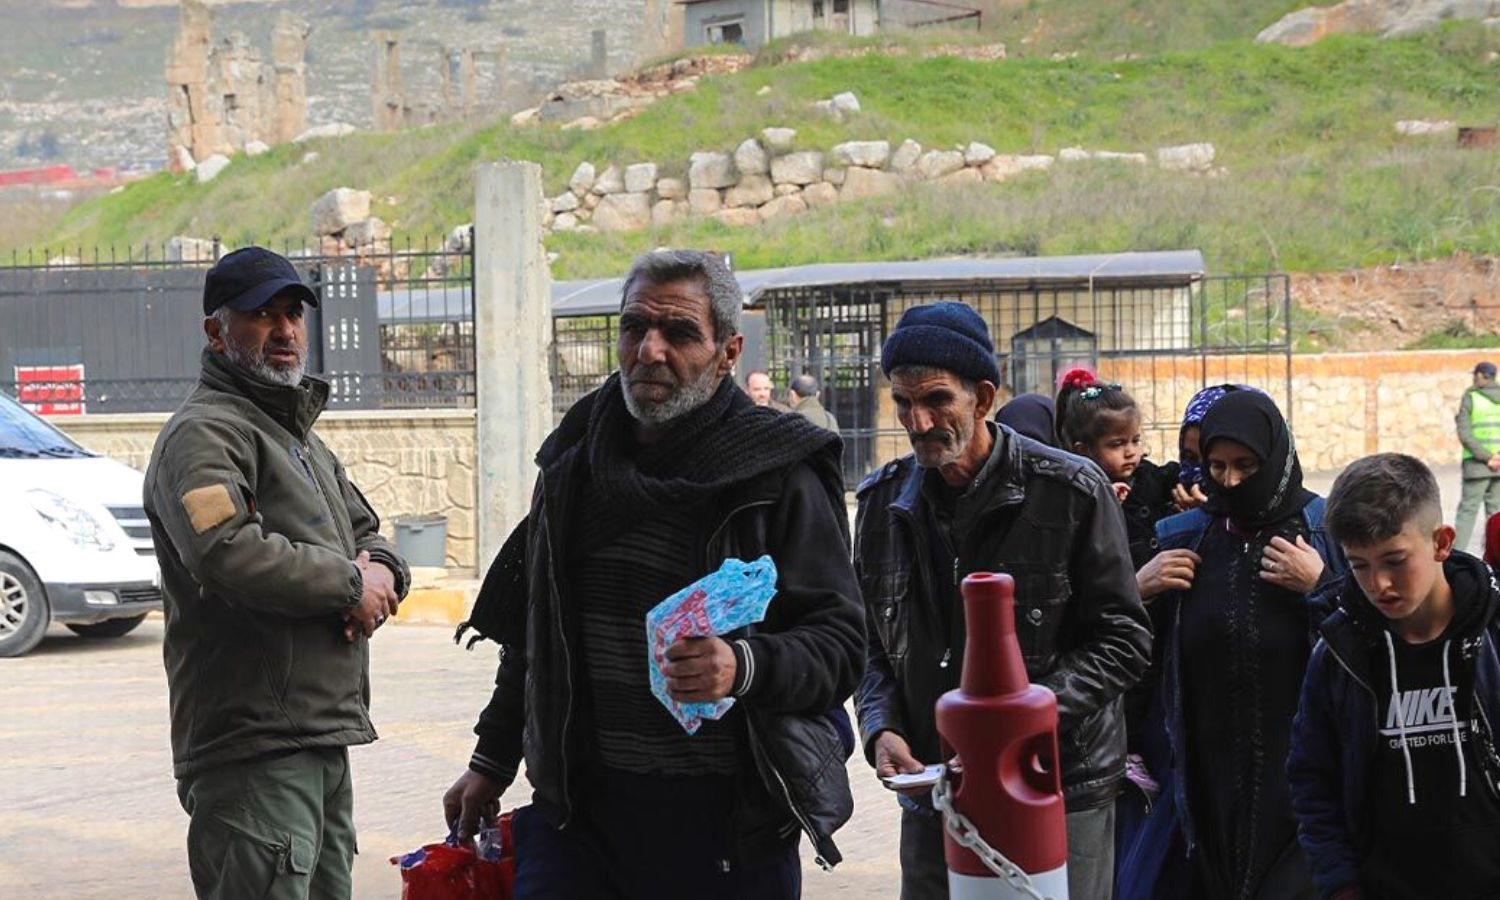 سوريون يدخلون الأراضي السورية من تركيا عبر معبر "باب الهوى" الحدودي بعد أضرار طالتهم من الزلزال- 19 شباط 2023 (معبر "باب الهوى")